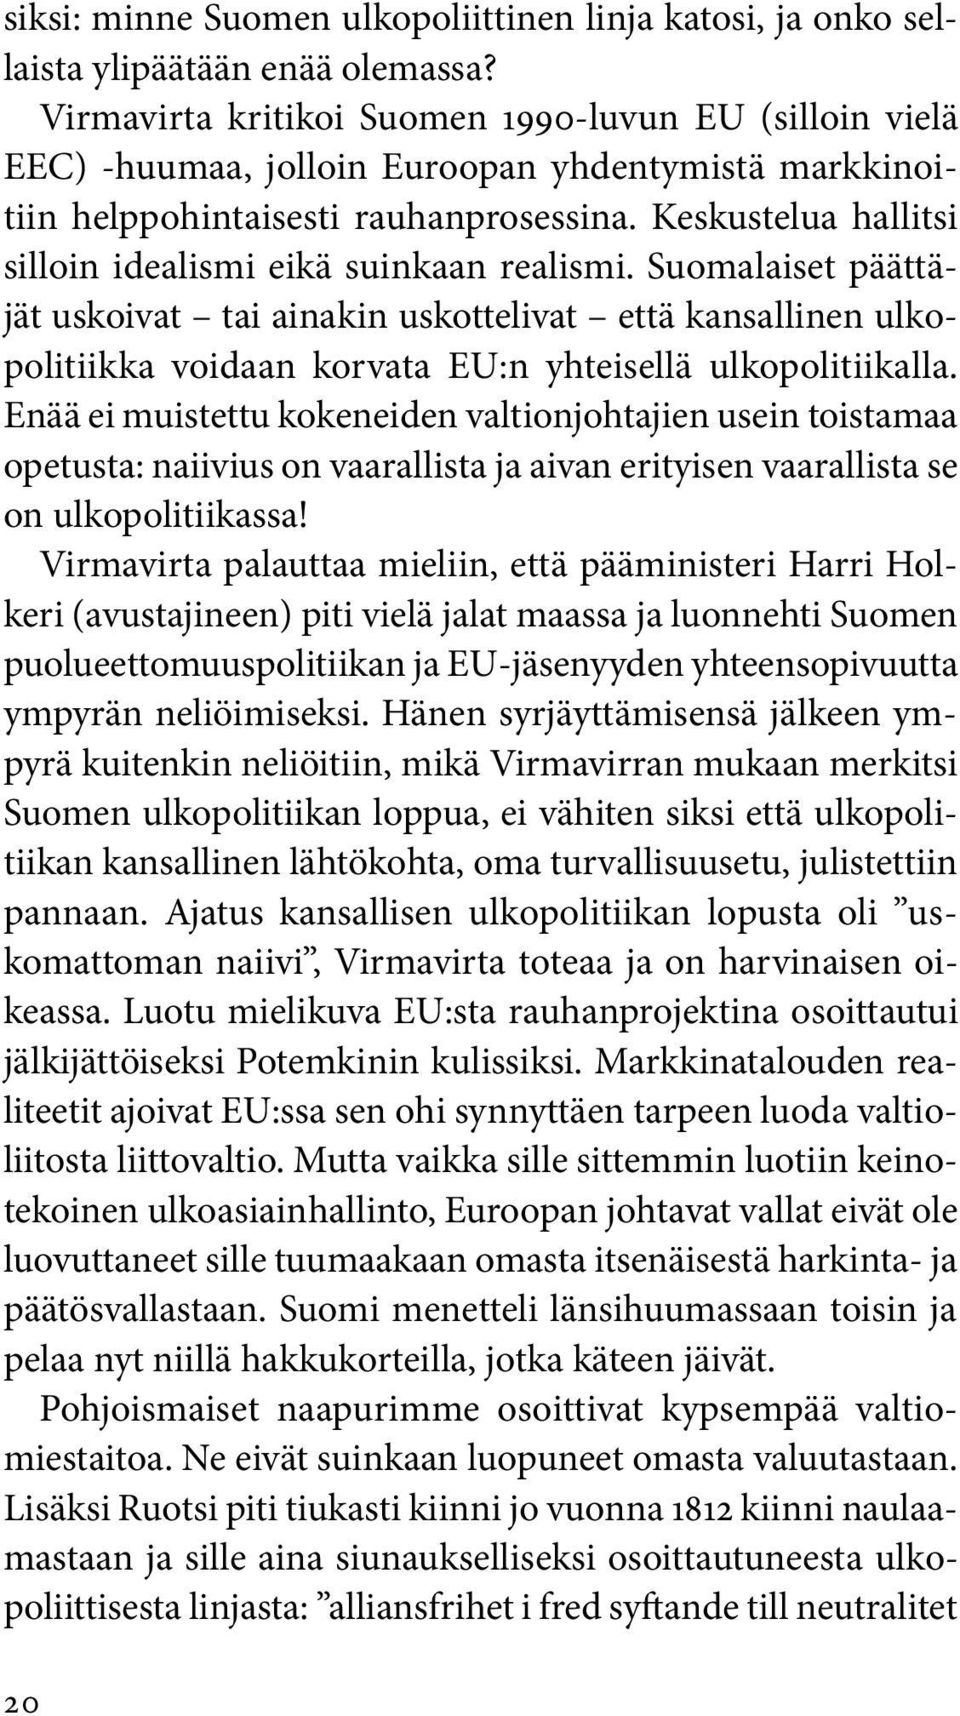 Keskustelua hallitsi silloin idealismi eikä suinkaan realismi. Suomalaiset päättäjät uskoivat tai ainakin uskottelivat että kansallinen ulkopolitiikka voidaan korvata EU:n yhteisellä ulkopolitiikalla.